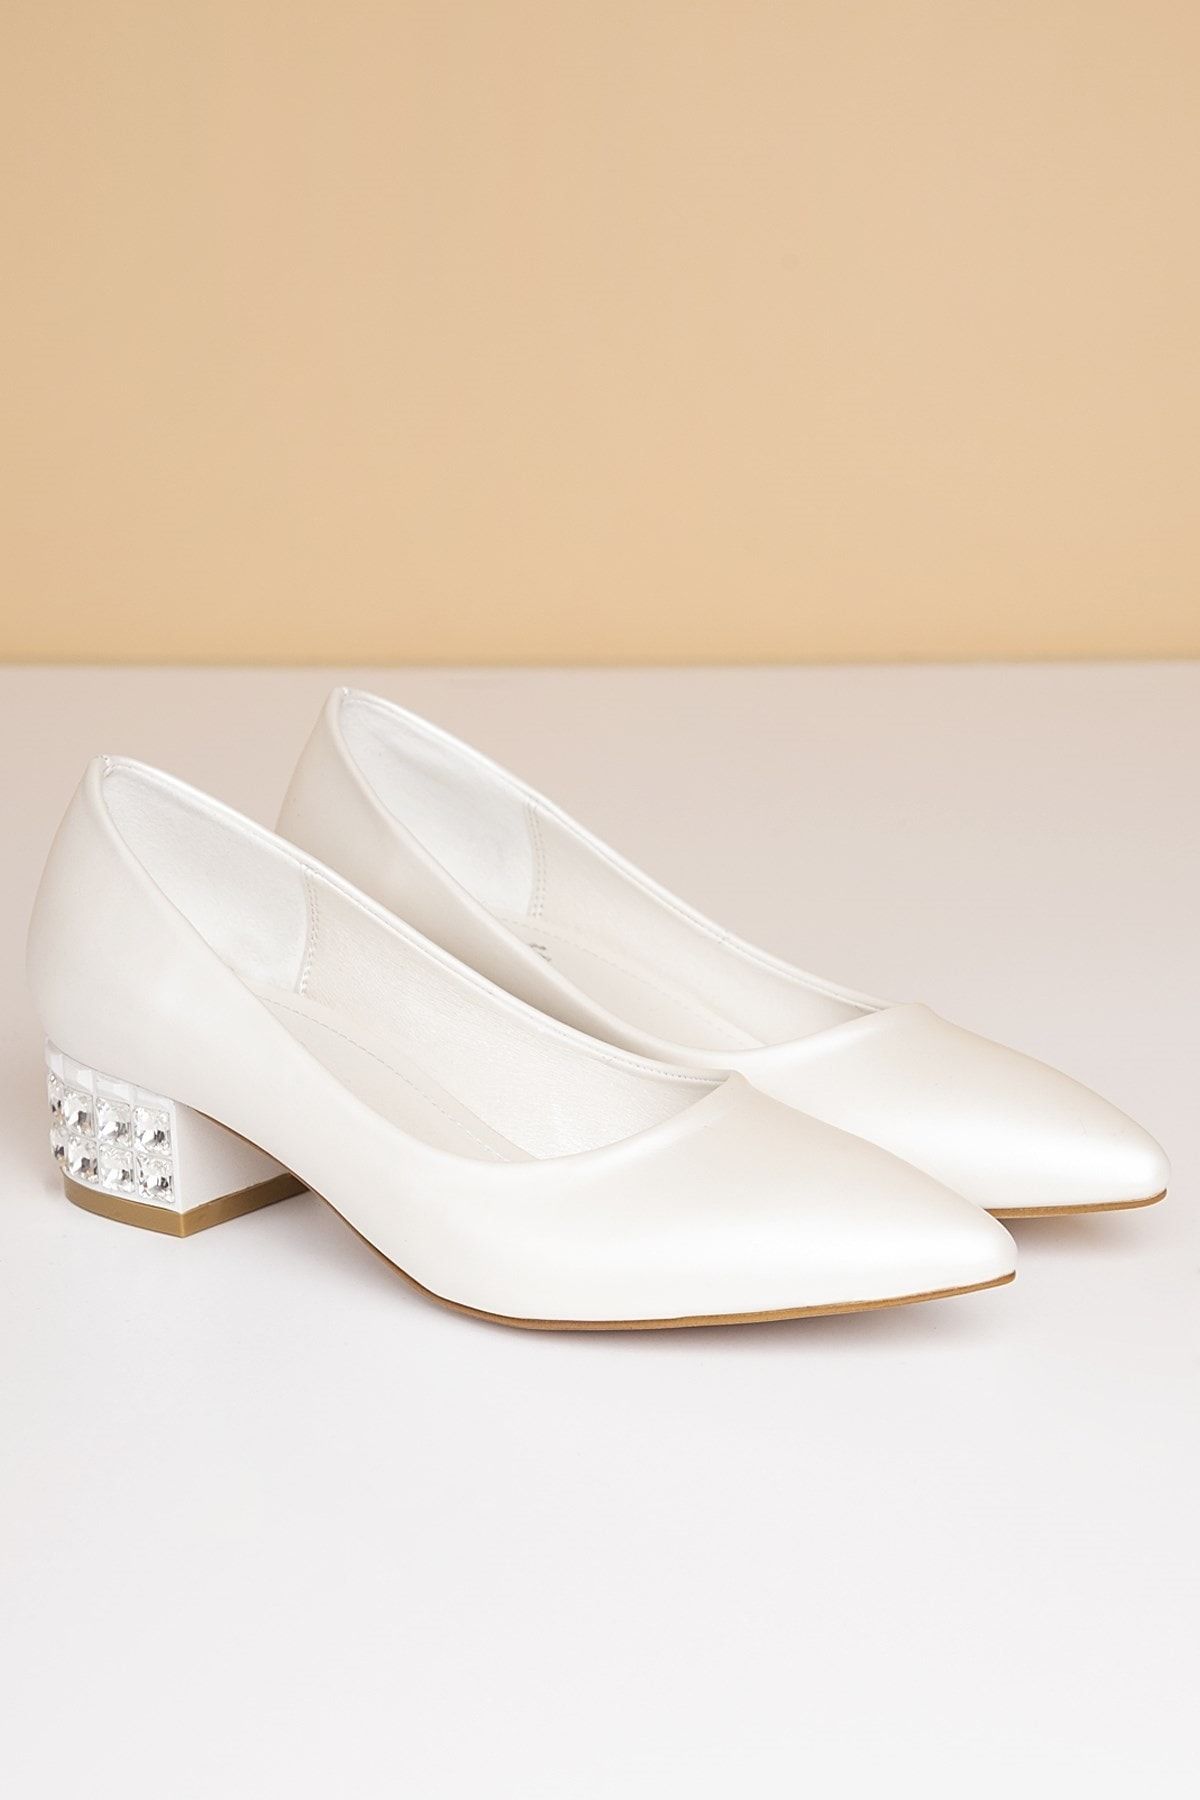 Pierre Cardin Pc-50284 Beyaz Kadın Ayakkabı